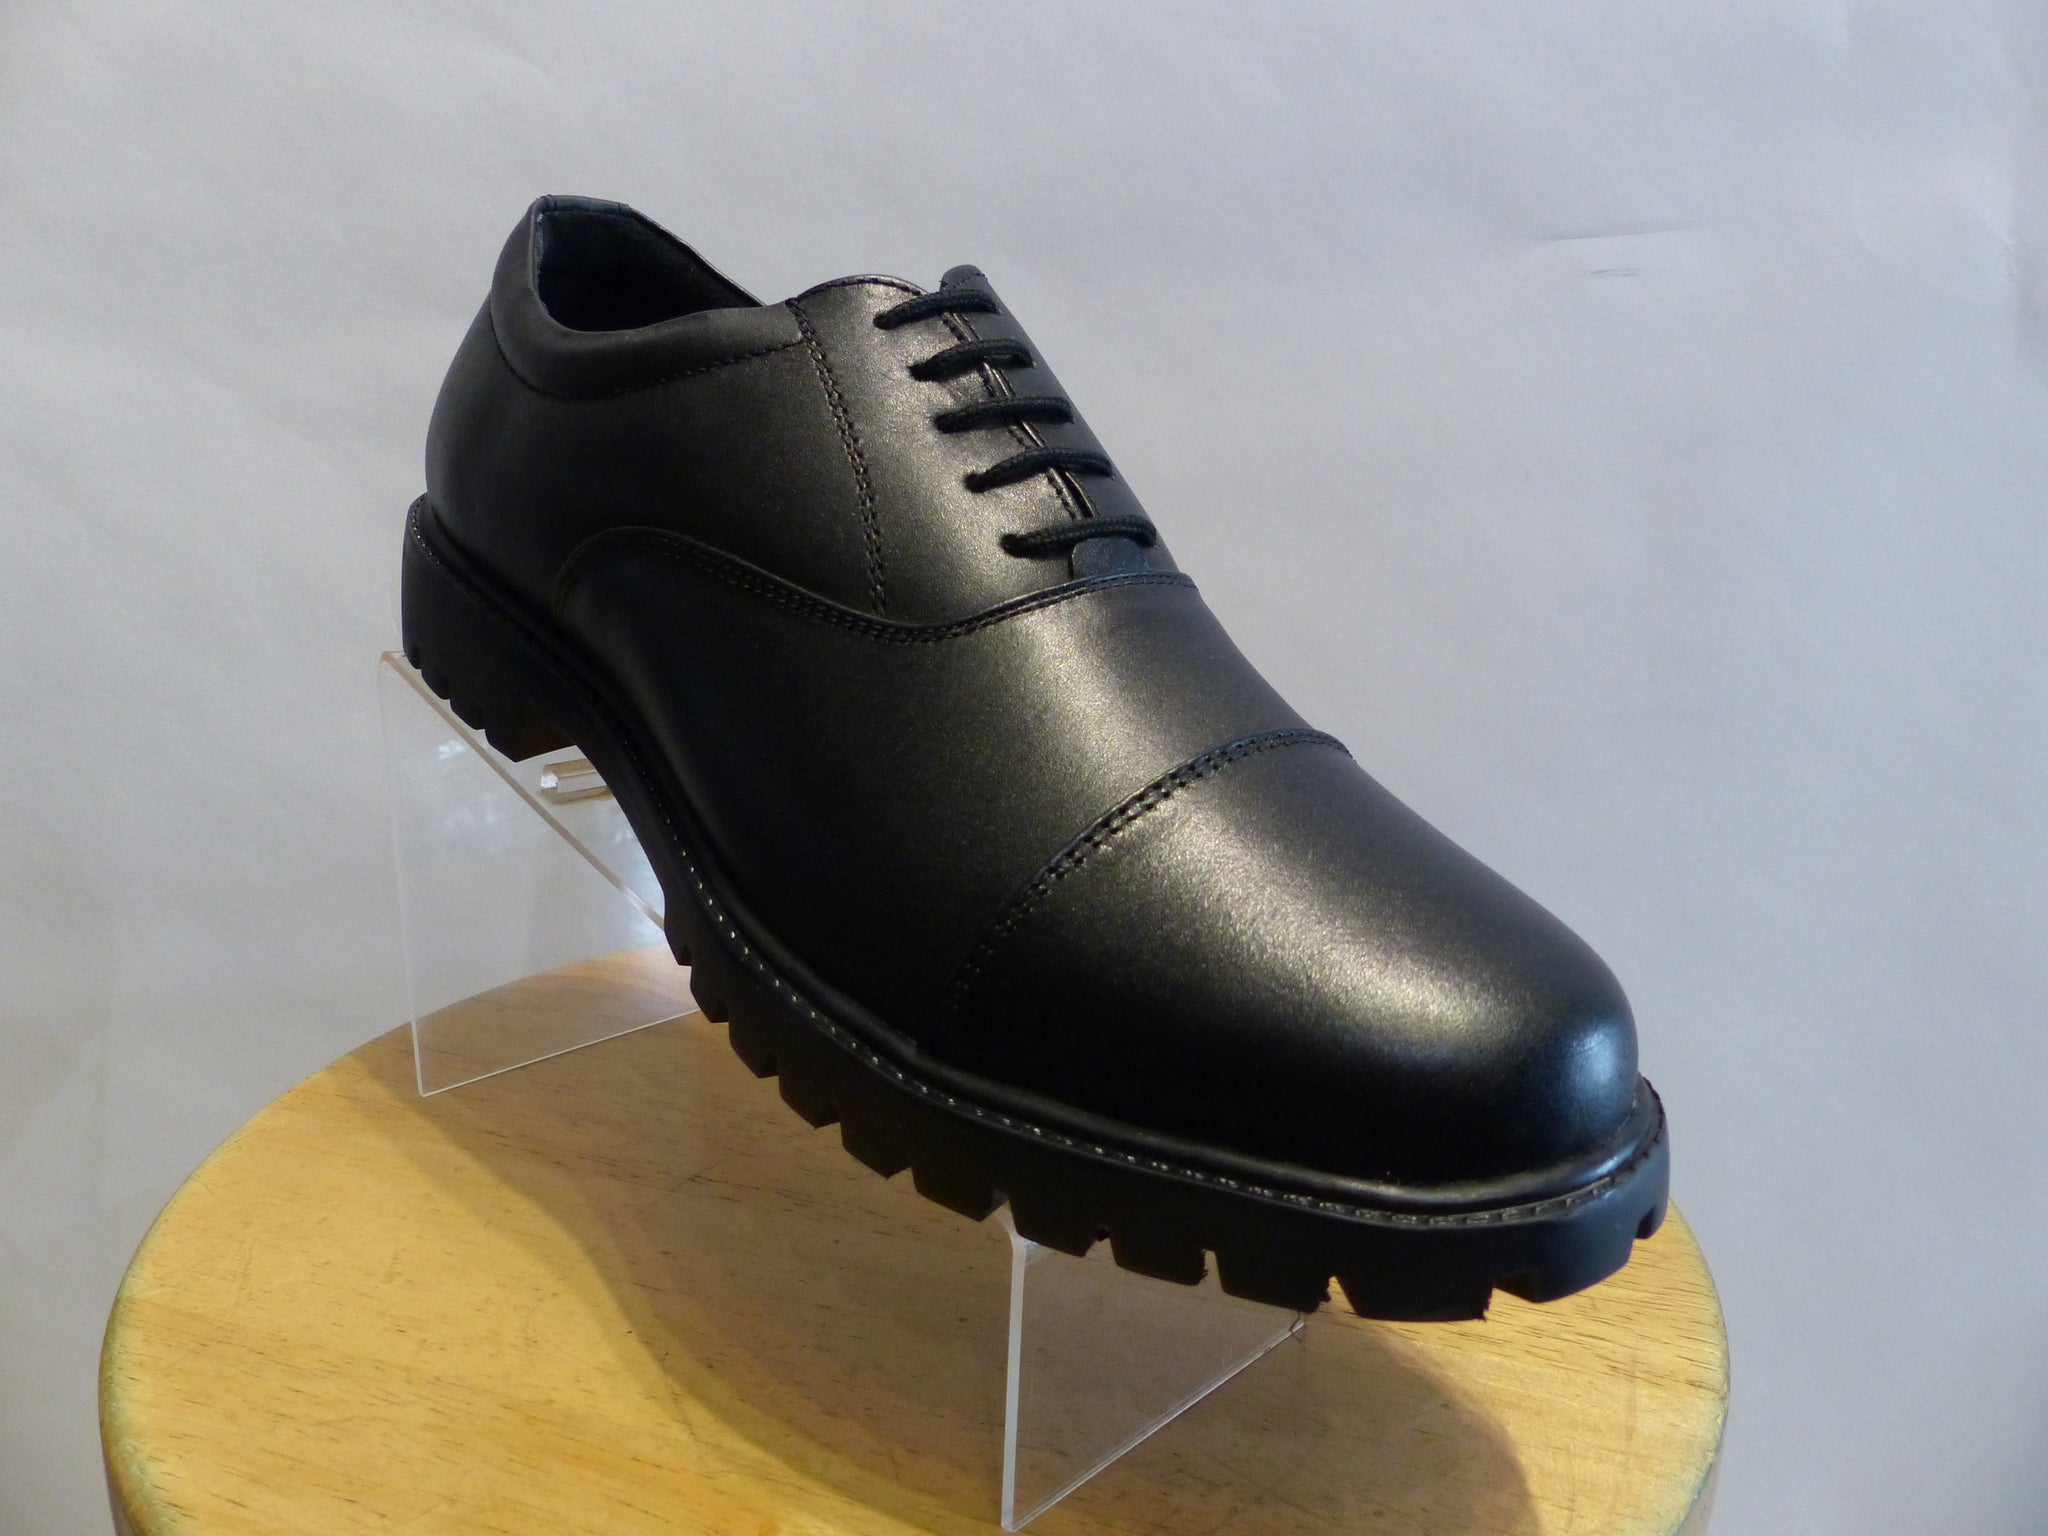 Men's Heavy Duty Uniform Black Shoes with 5 laces hole Designed by Cot ...